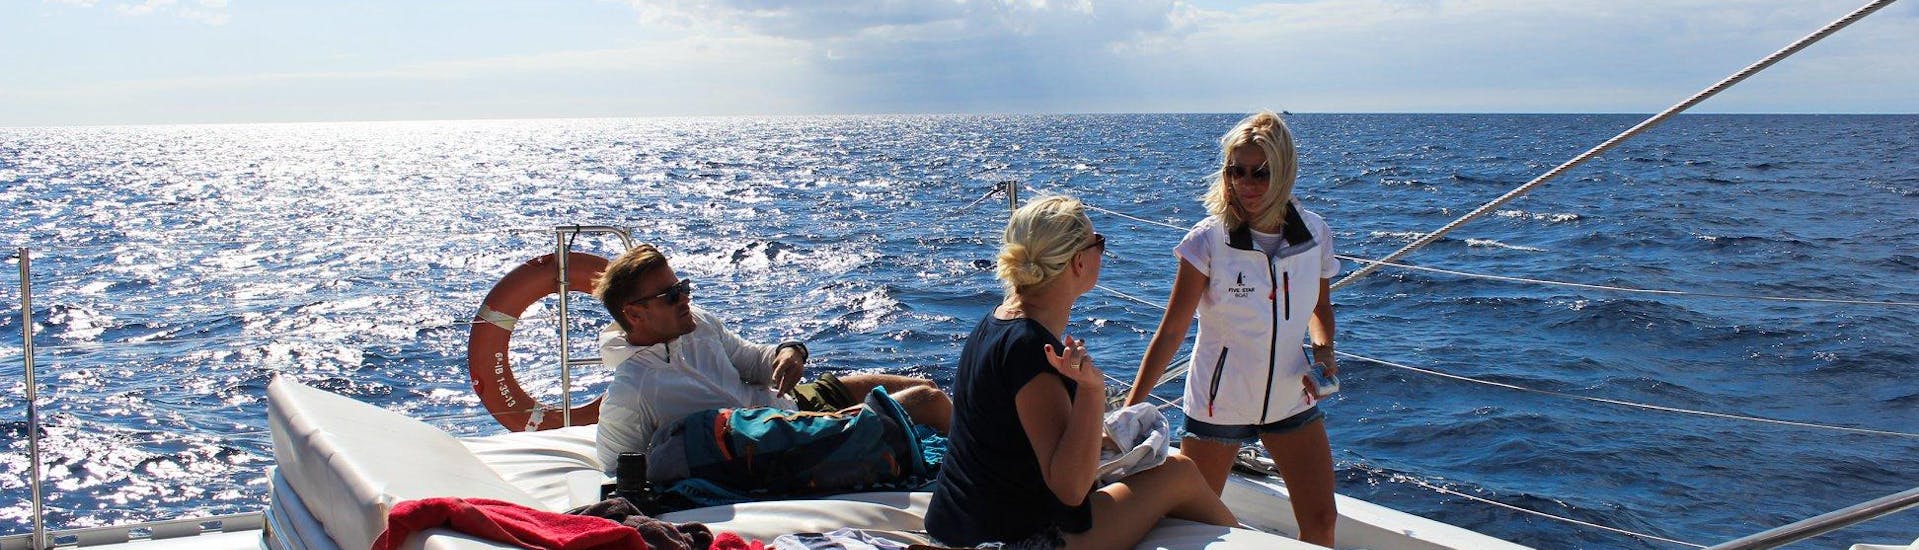 Gruppe von Freunden beim Sonnenbaden auf dem Deck des Bootes während der Katamarantour von Puerto Rico mit Mittagessen und Schnorcheln mit Five Star Gran Canaria.